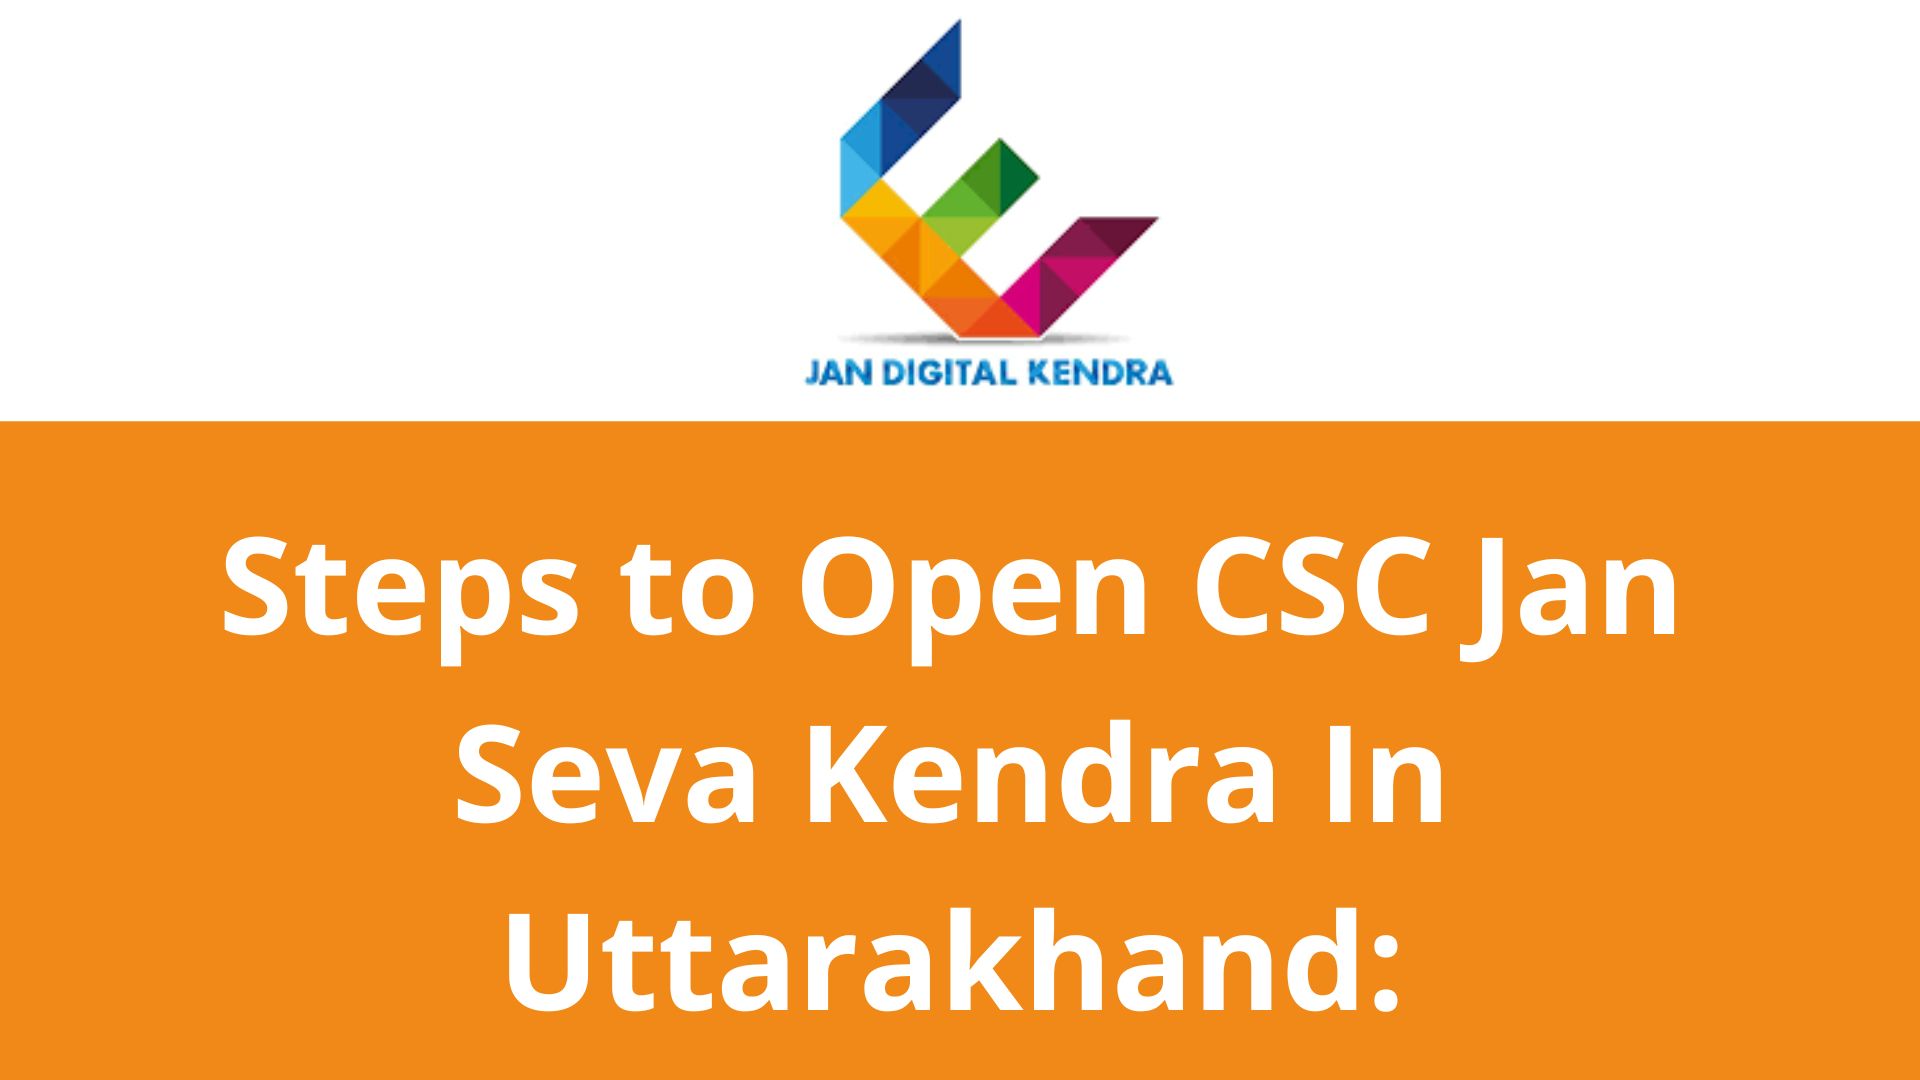 Steps to Open CSC Jan Seva Kendra In Uttarakhand